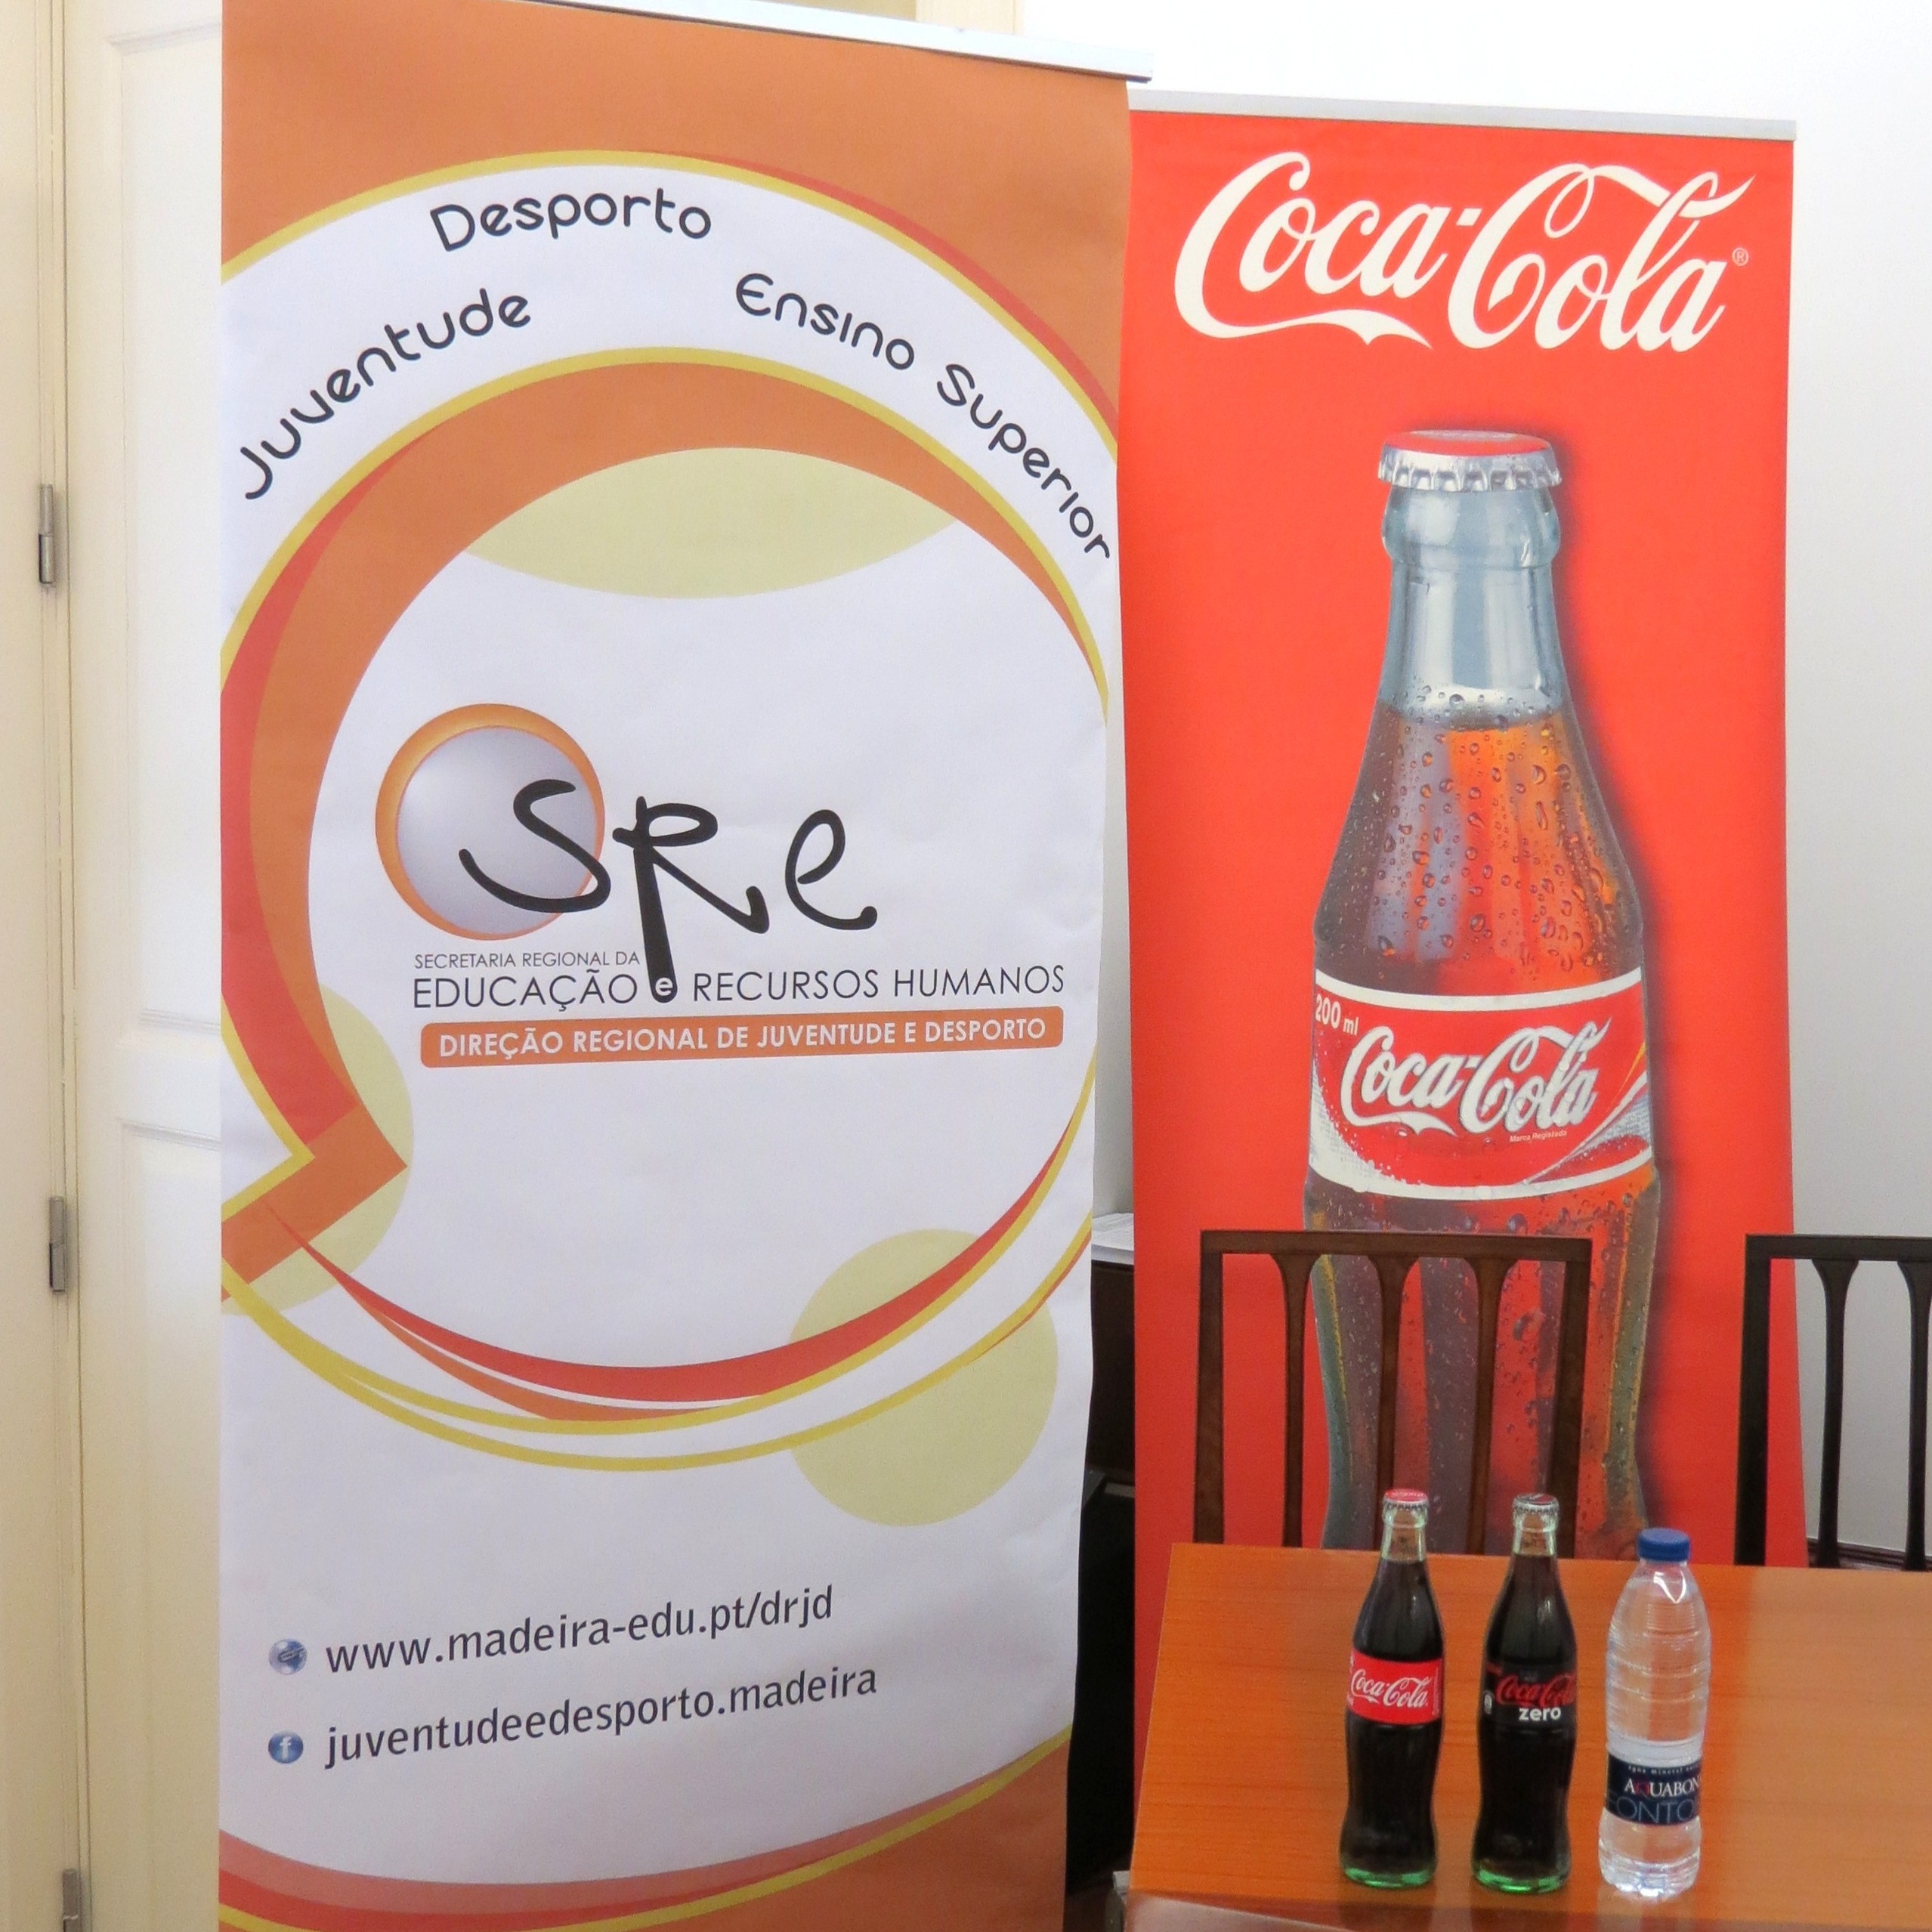 DRJD e Coca-Cola assinam amanhã Protocolo de Colaboração